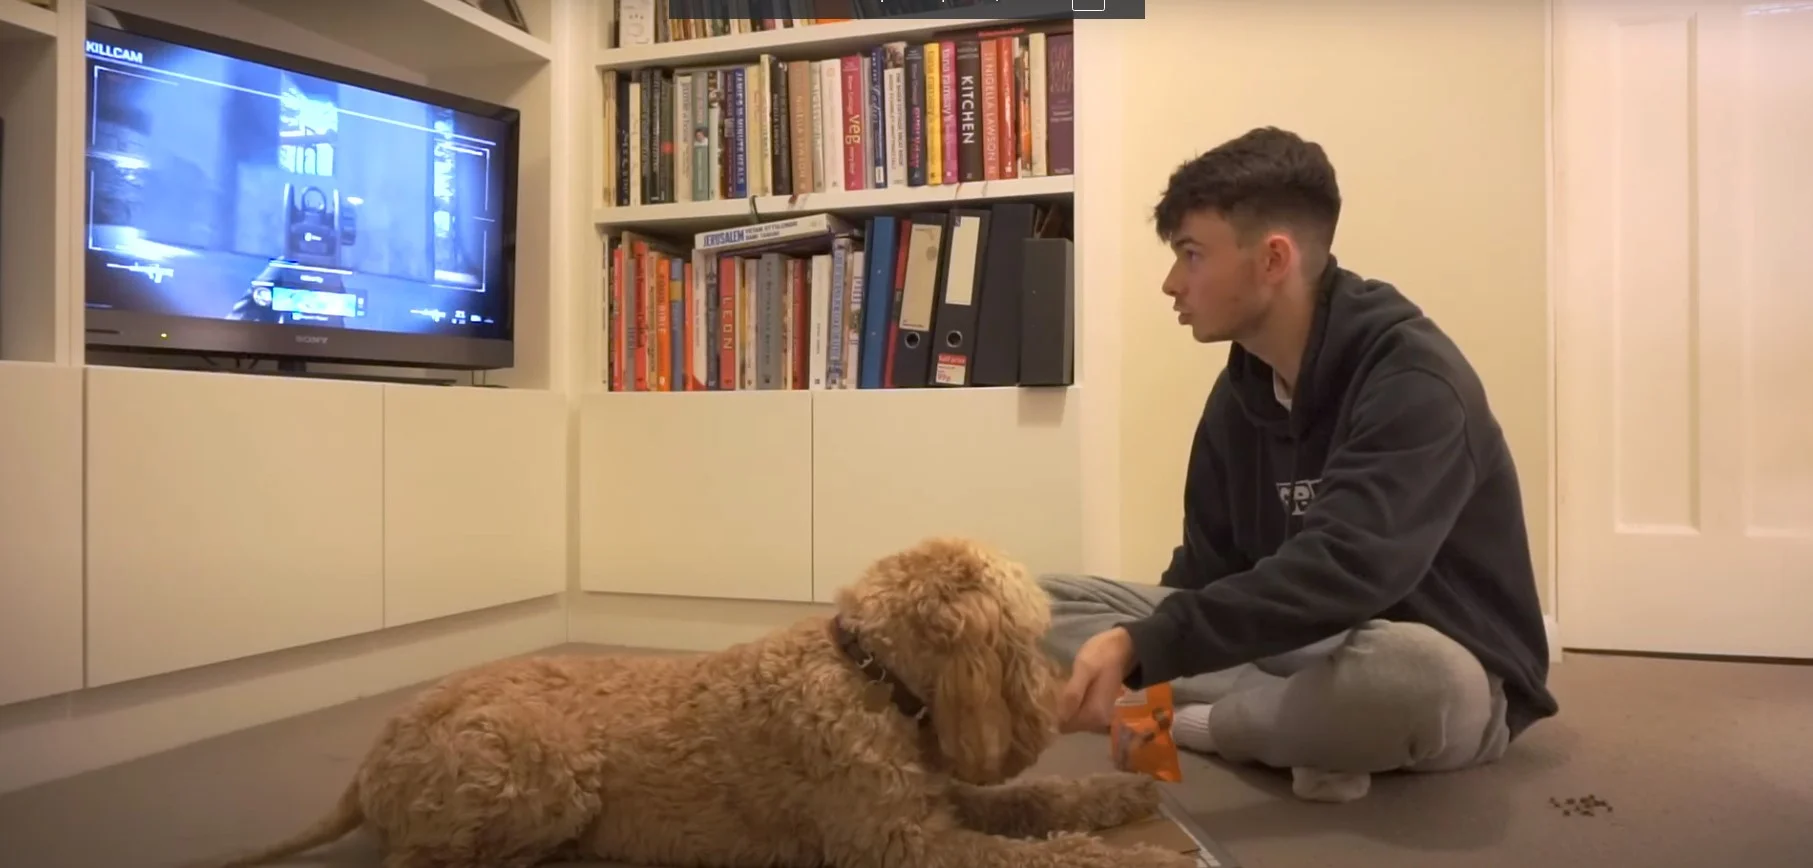 Блогер научил собаку играть в Call of Duty: Warzone. Получилось удачно - изображение обложка